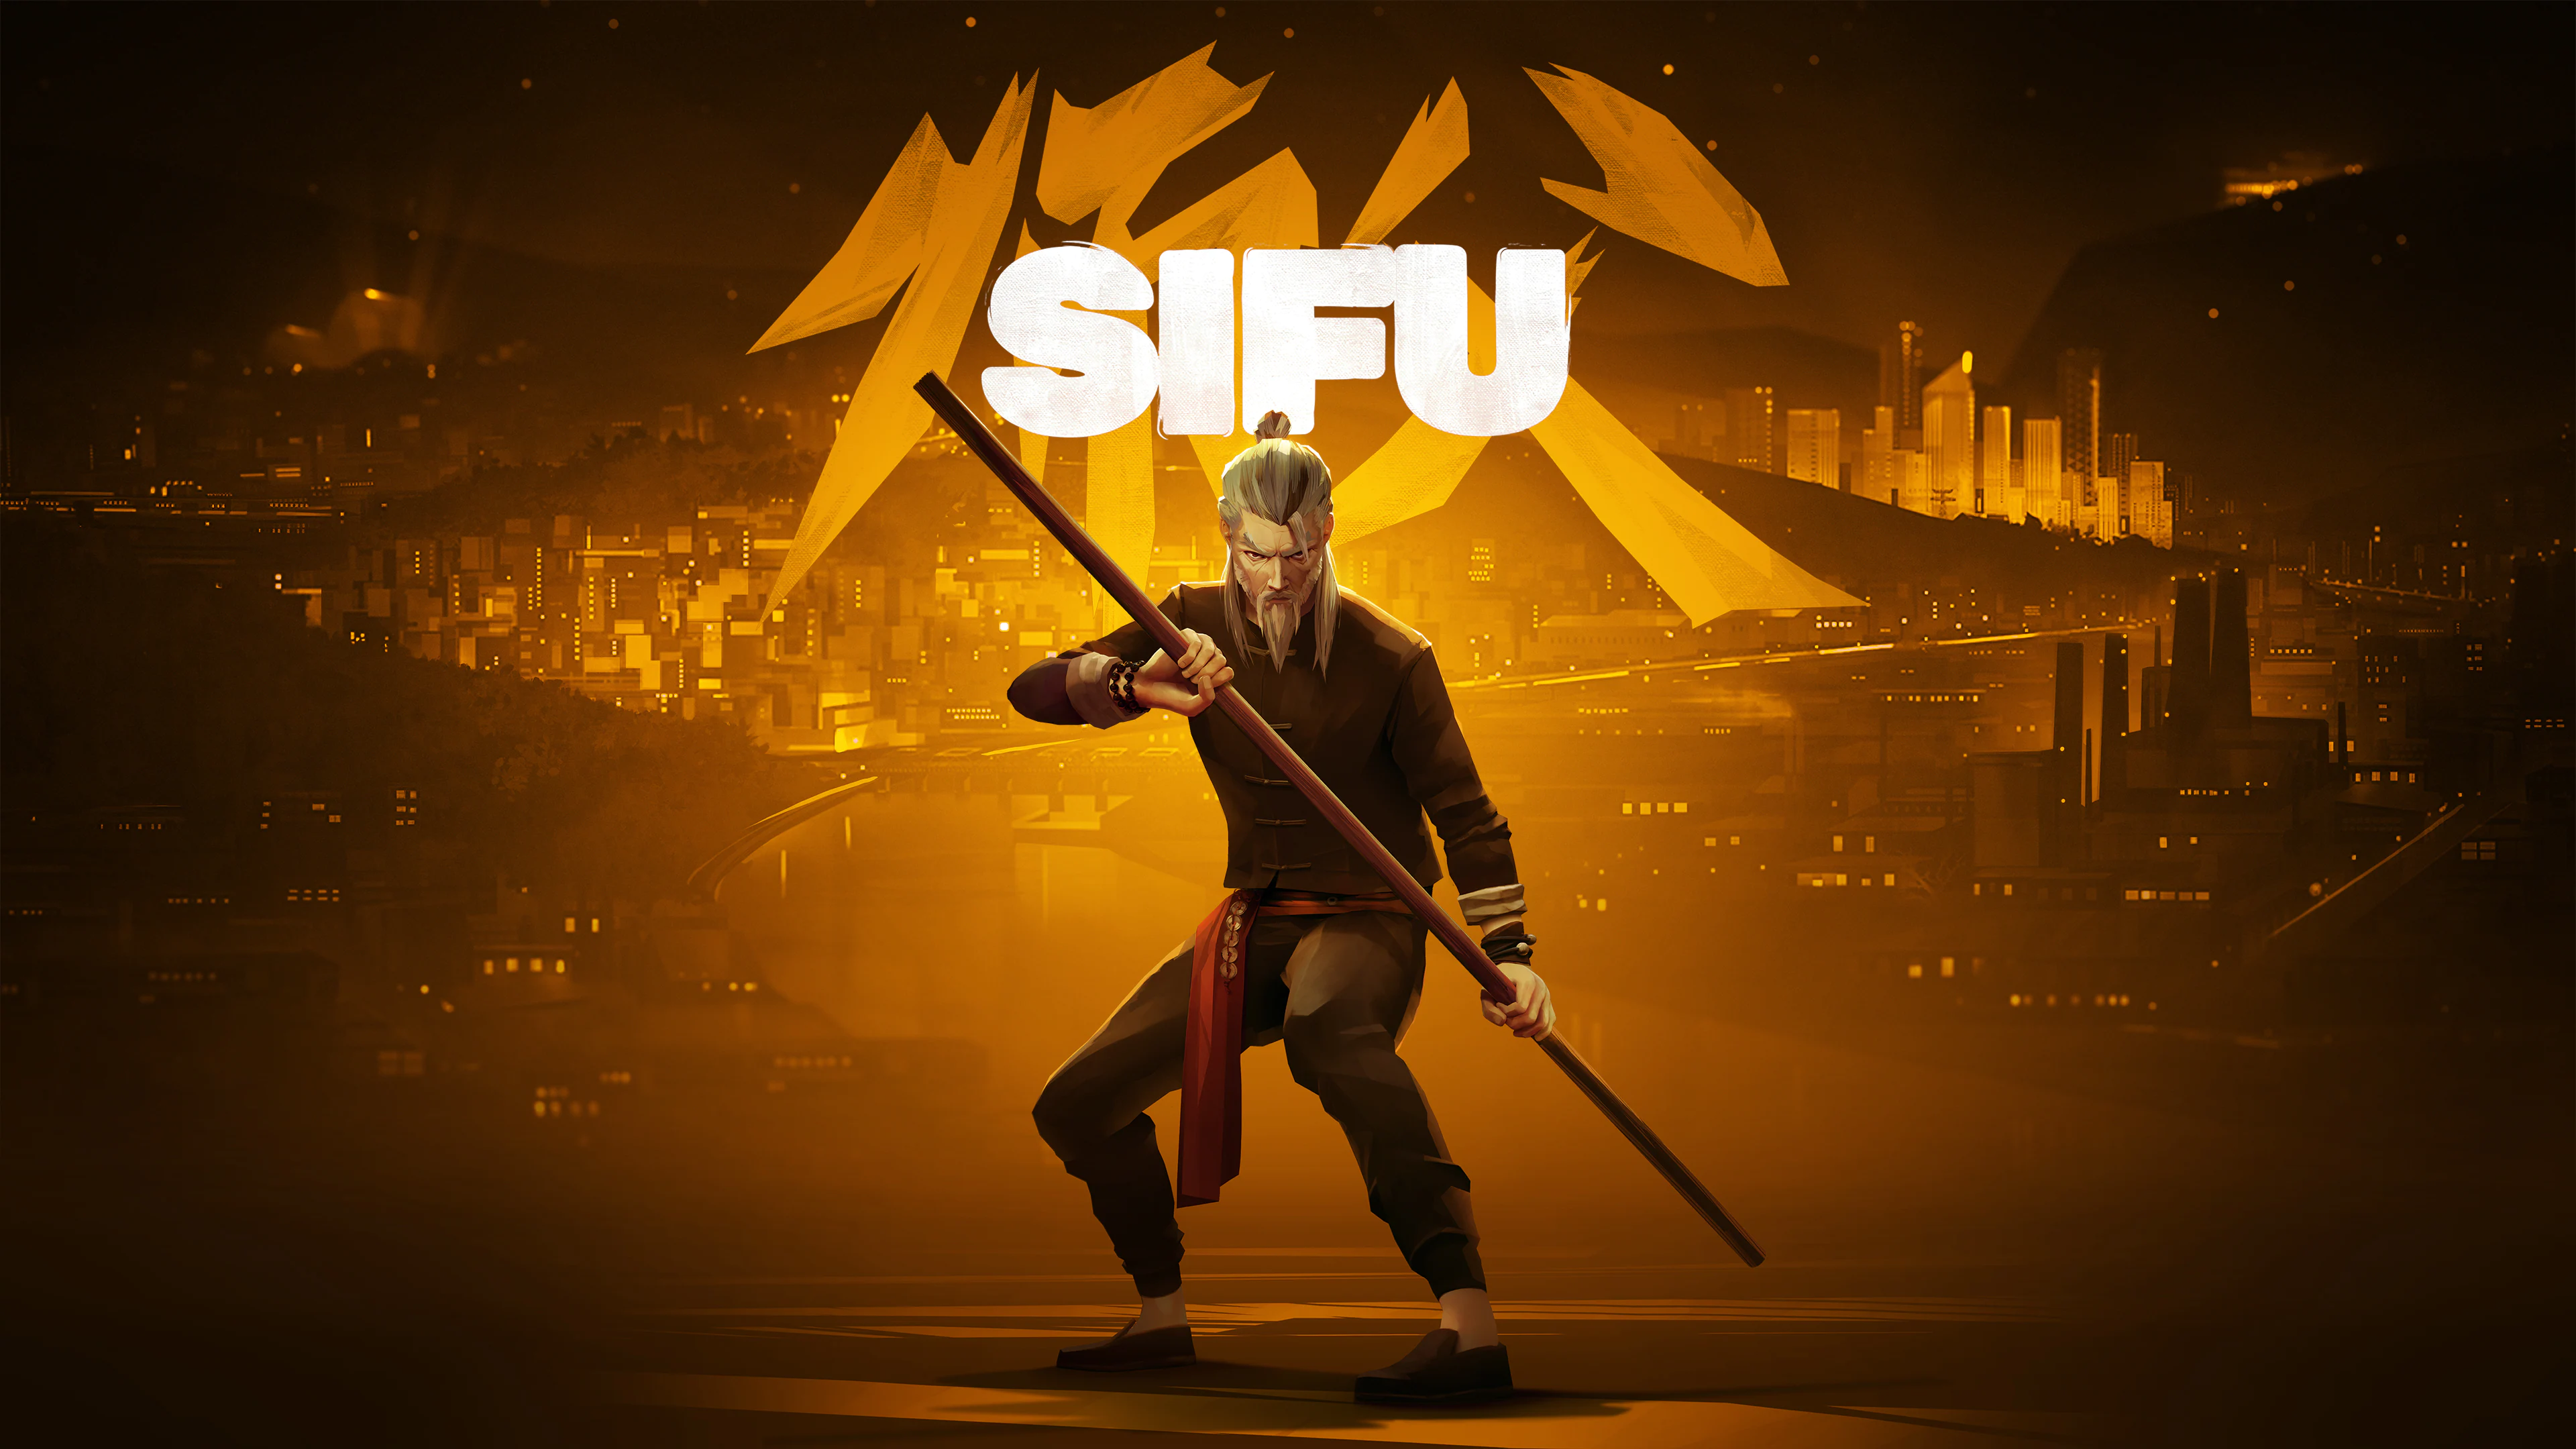 En septiembre, el juego de lucha y acción Sifu recibirá su última actualización gratuita